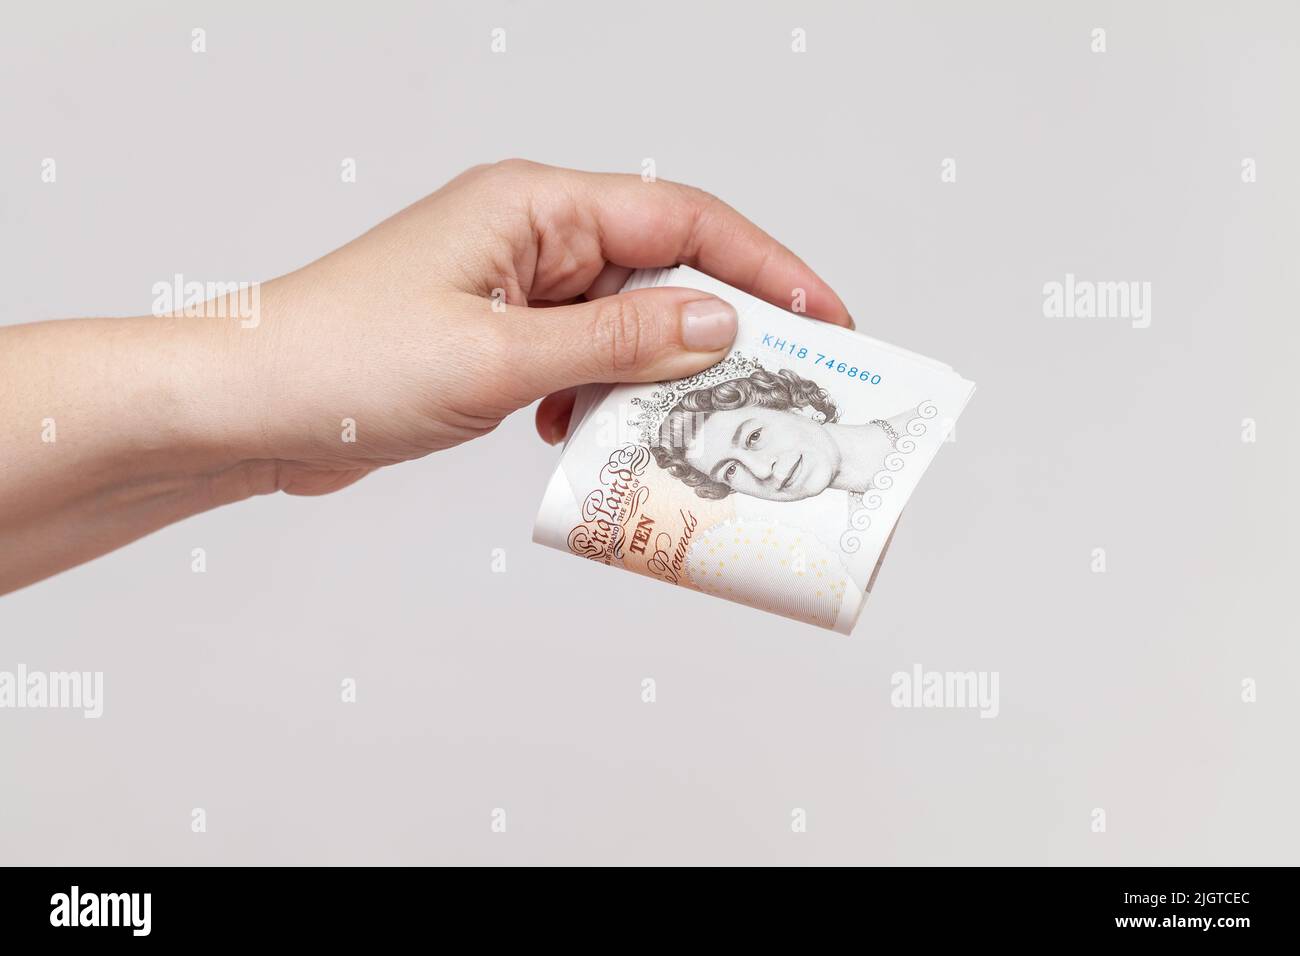 Stapel von zehn Pfund-Noten der Bank of England in weiblicher Hand. Nahaufnahme über grauem Wandhintergrund Stockfoto